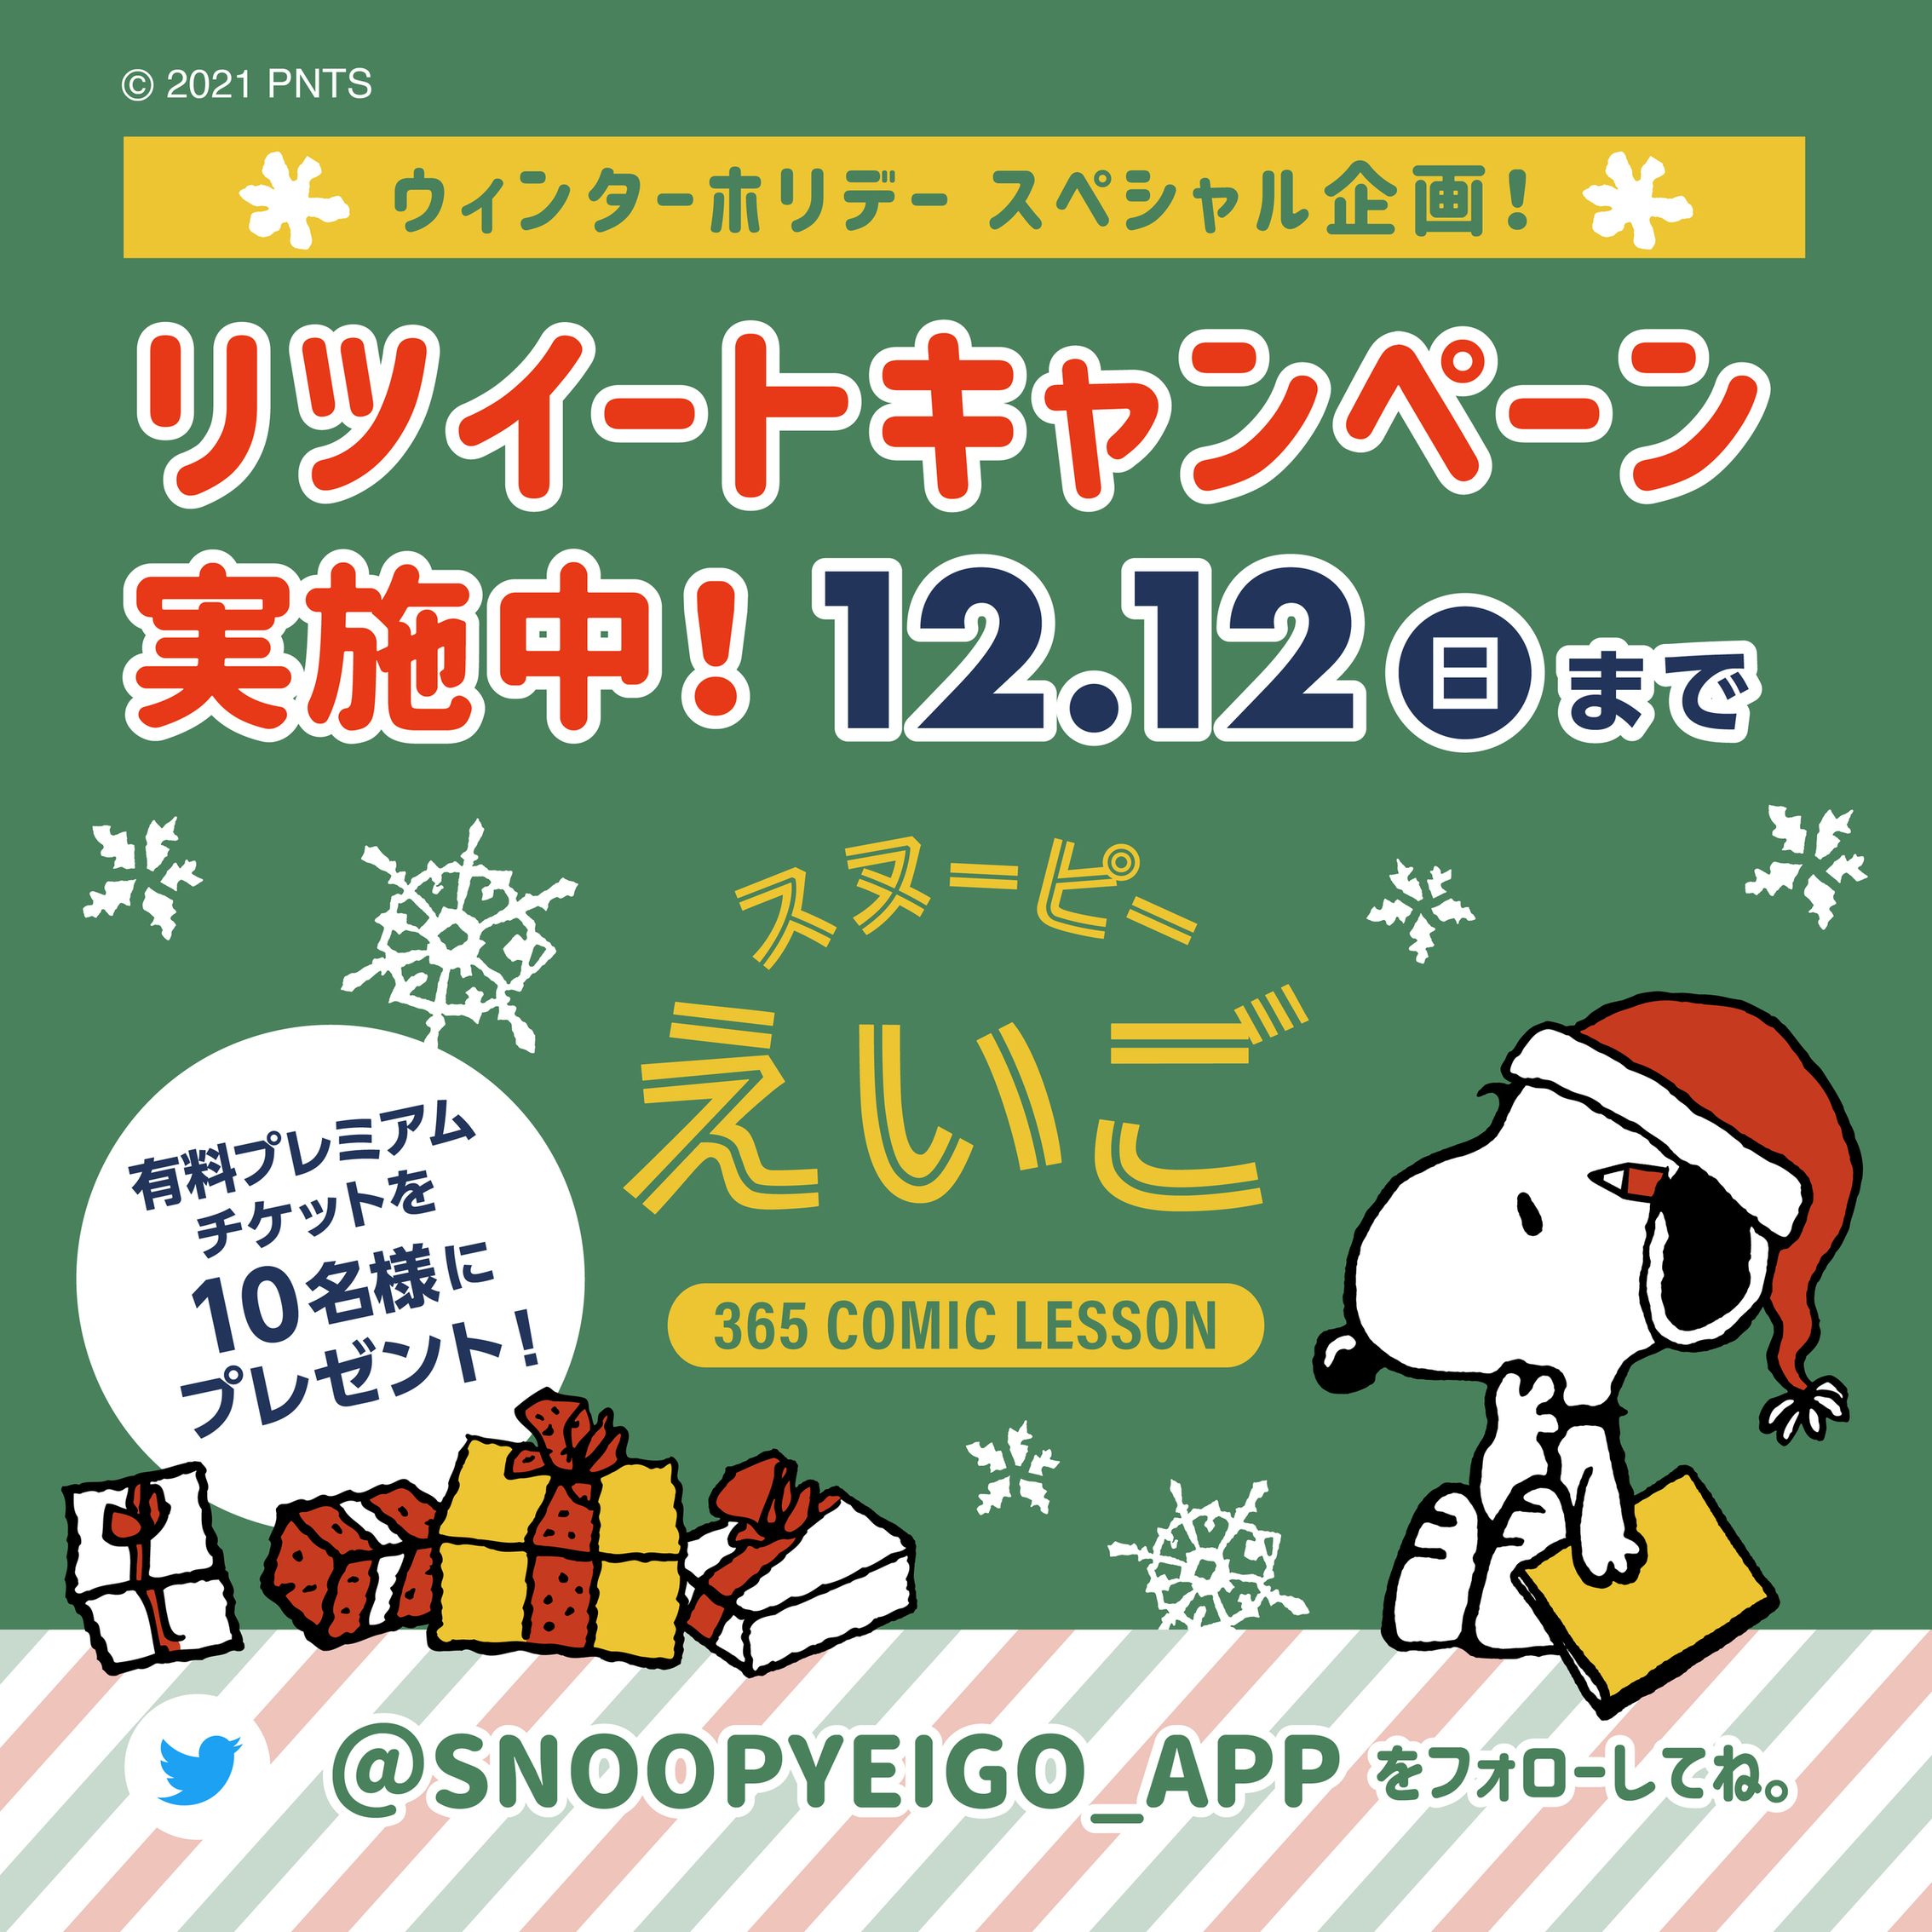 スヌーピーえいご Snoopyeigo App Twitter